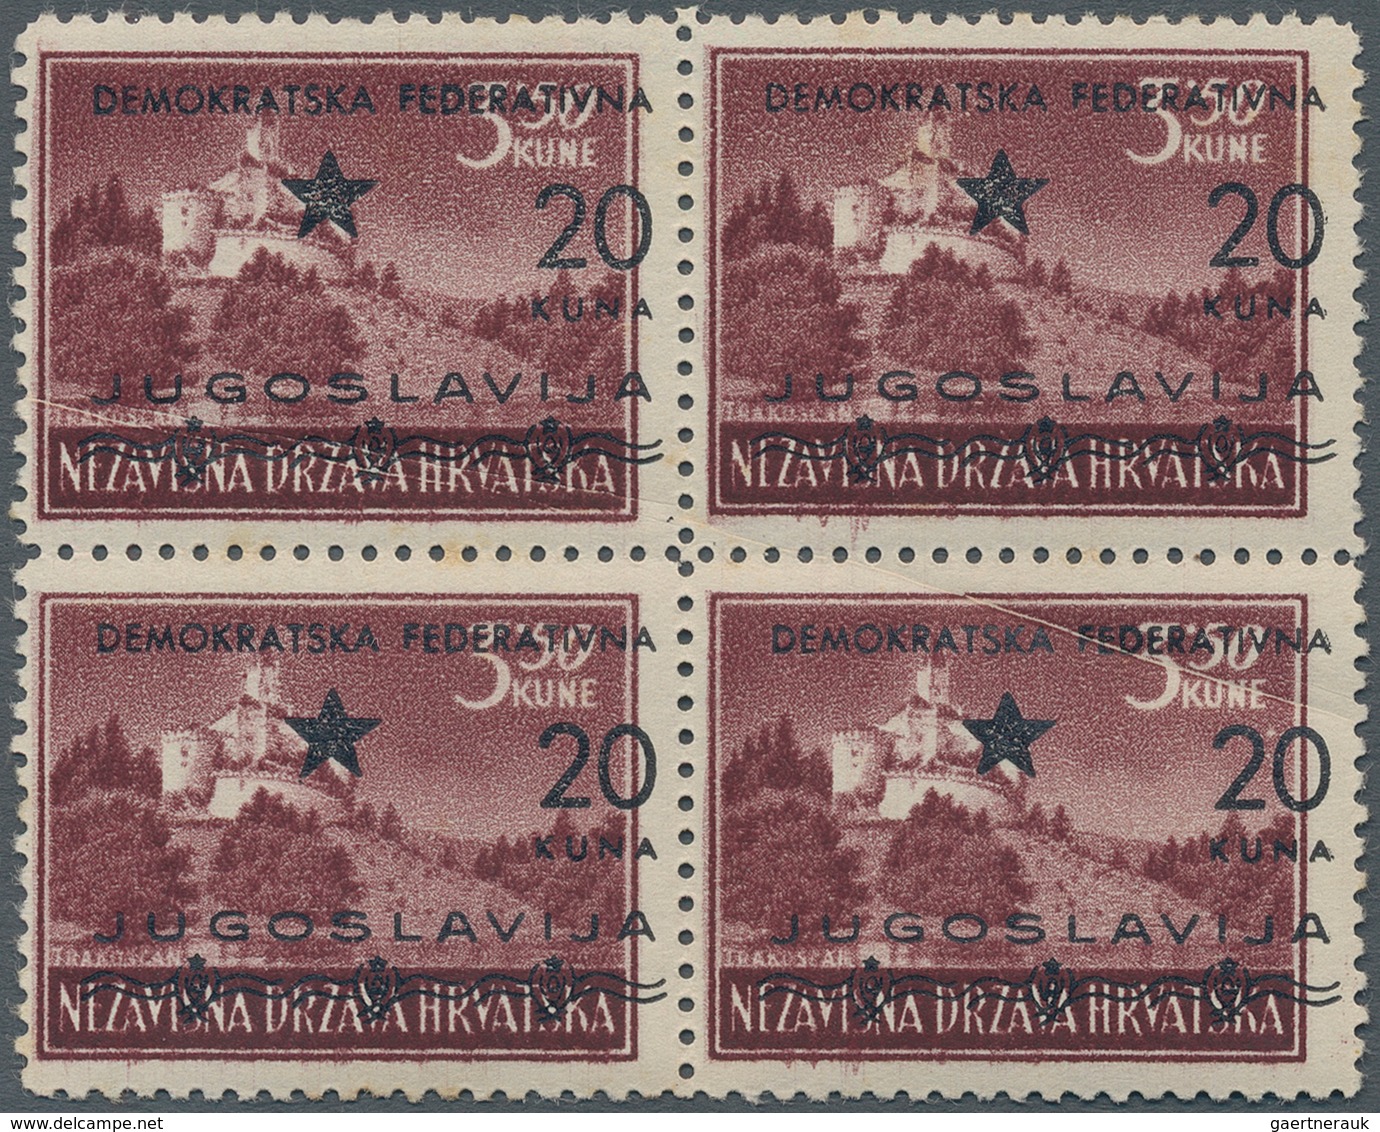 Jugoslawien - Volksrepubliken 1945: Kroatien: 1945 (1-21 Mar). SPLIT ISSUE. Variety 3,50K Purple-bro - Croatia